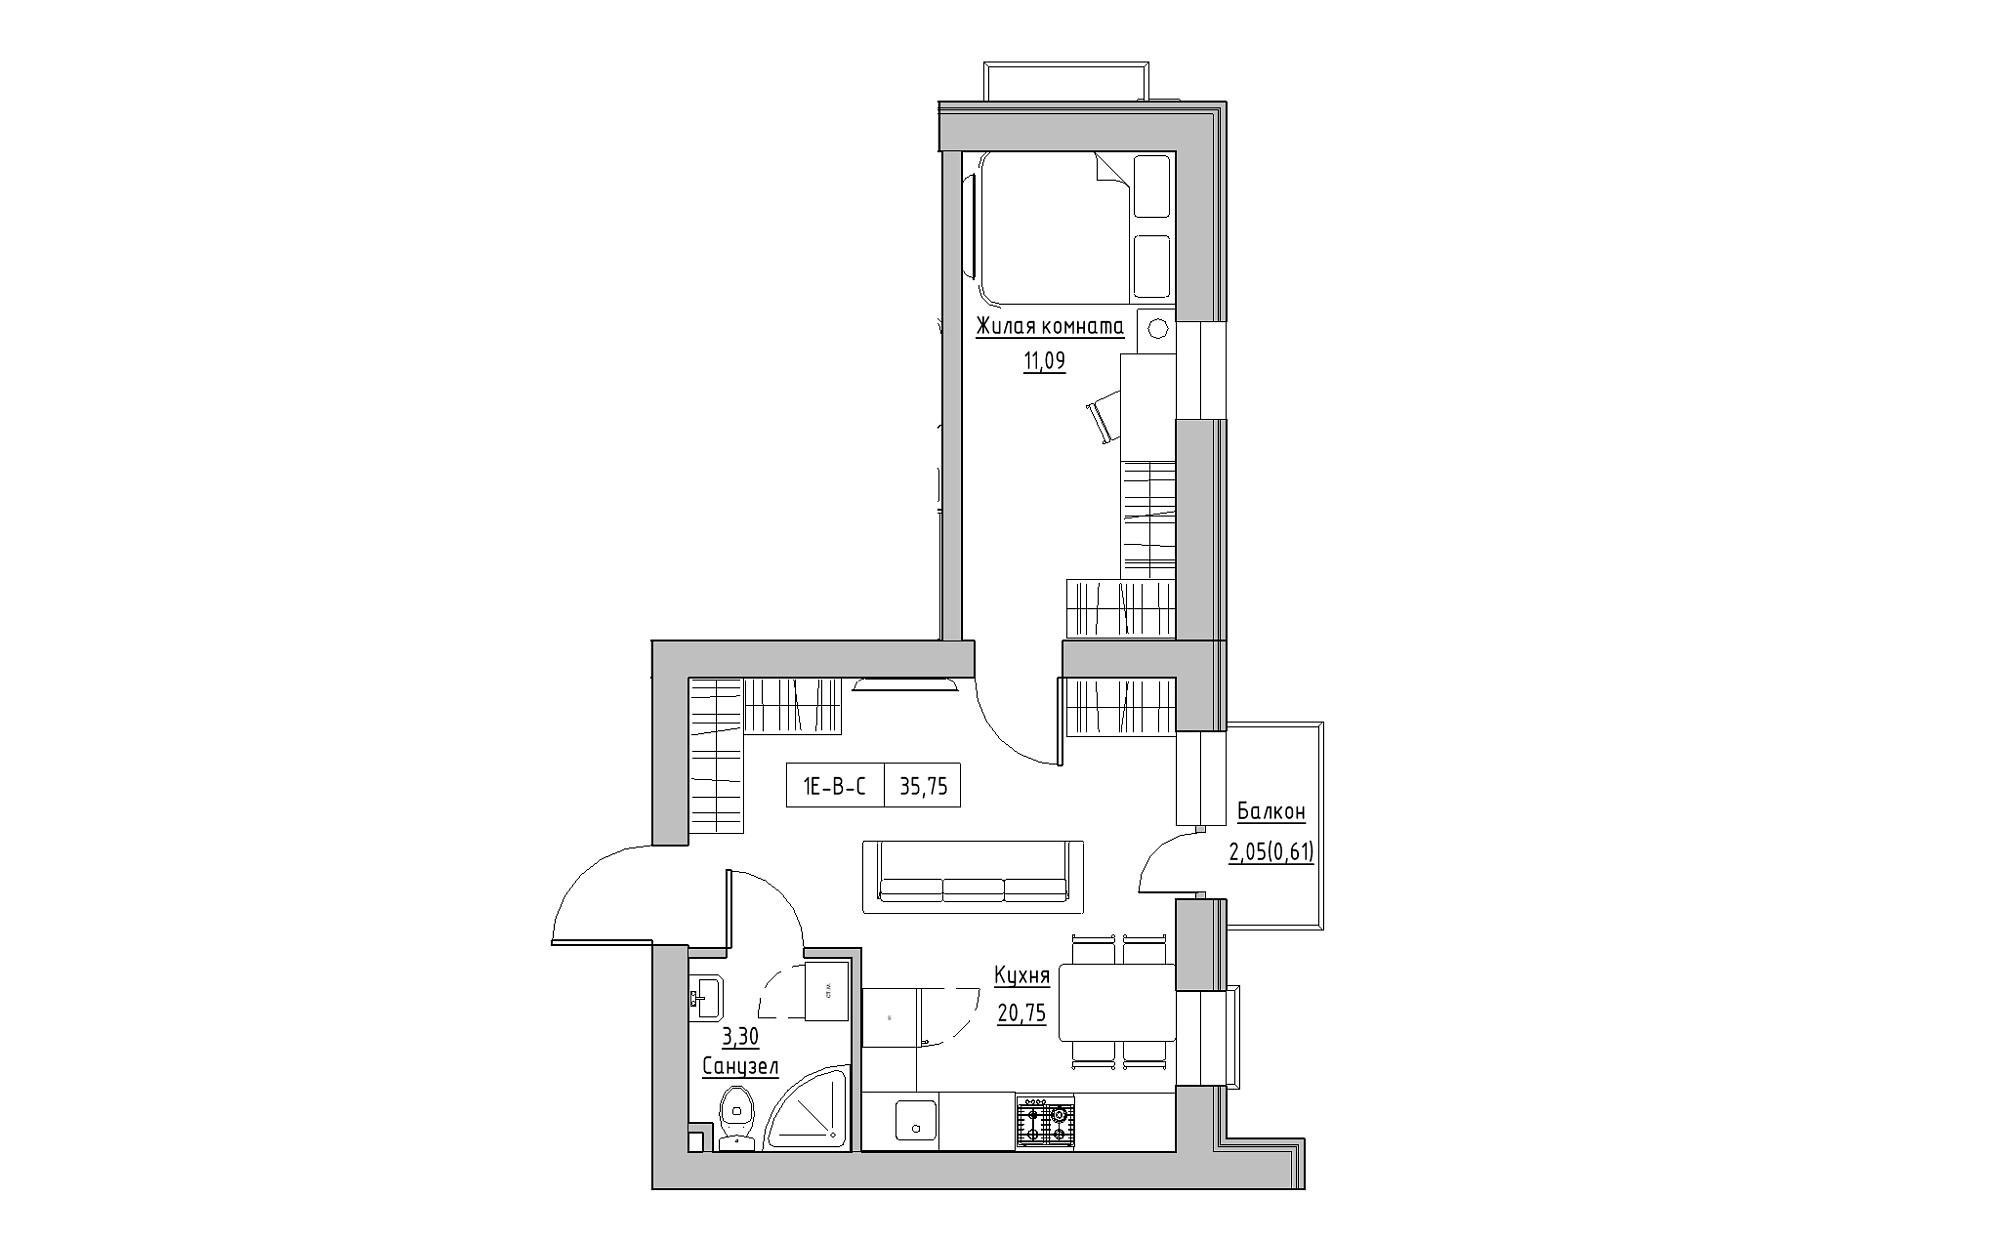 Планировка 1-к квартира площей 35.75м2, KS-022-03/0009.